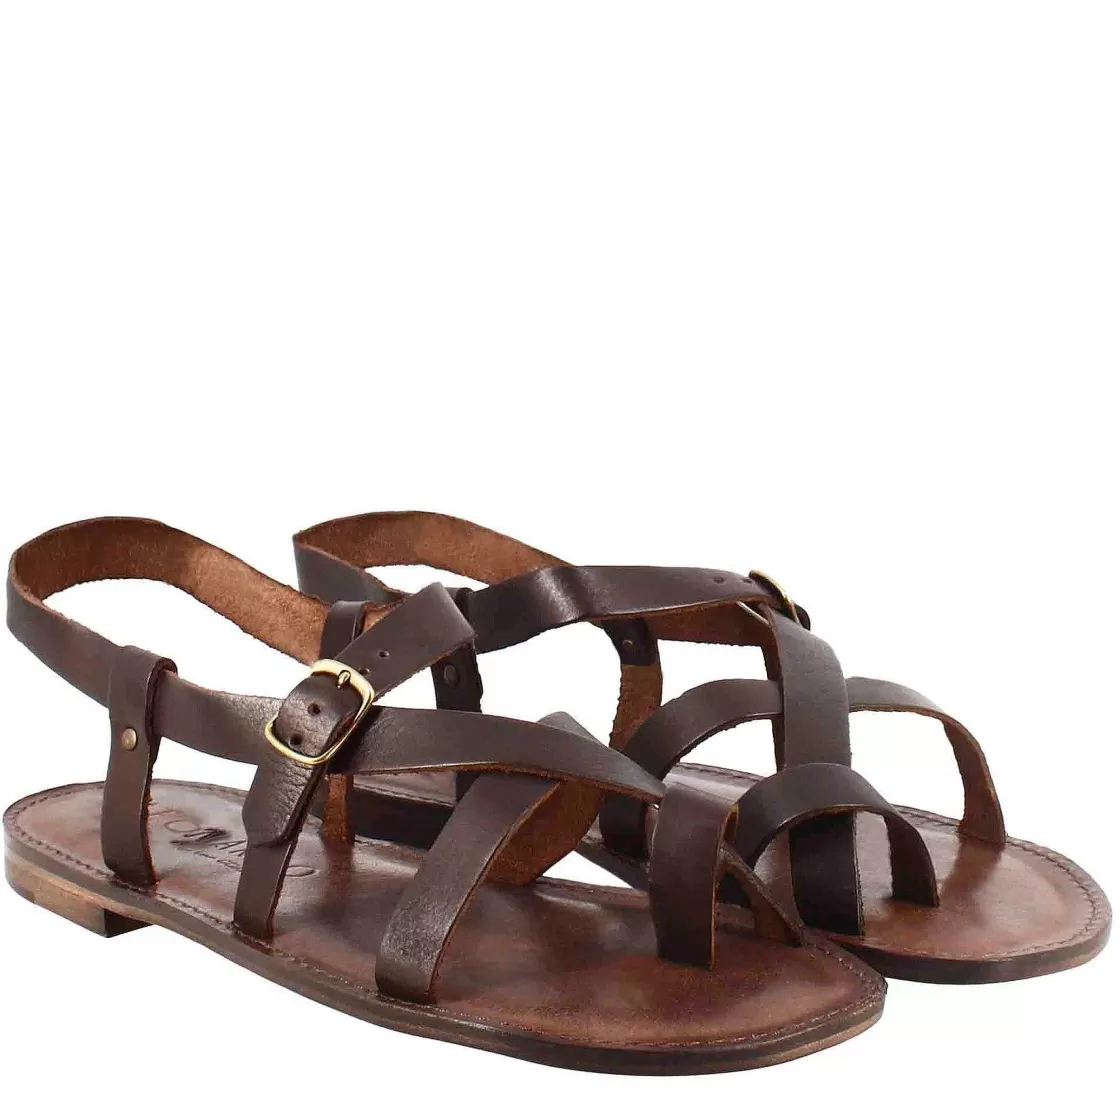 Leonardo Men'S Gladiator Model Rimini Sandals In Brown Leather Best Sale